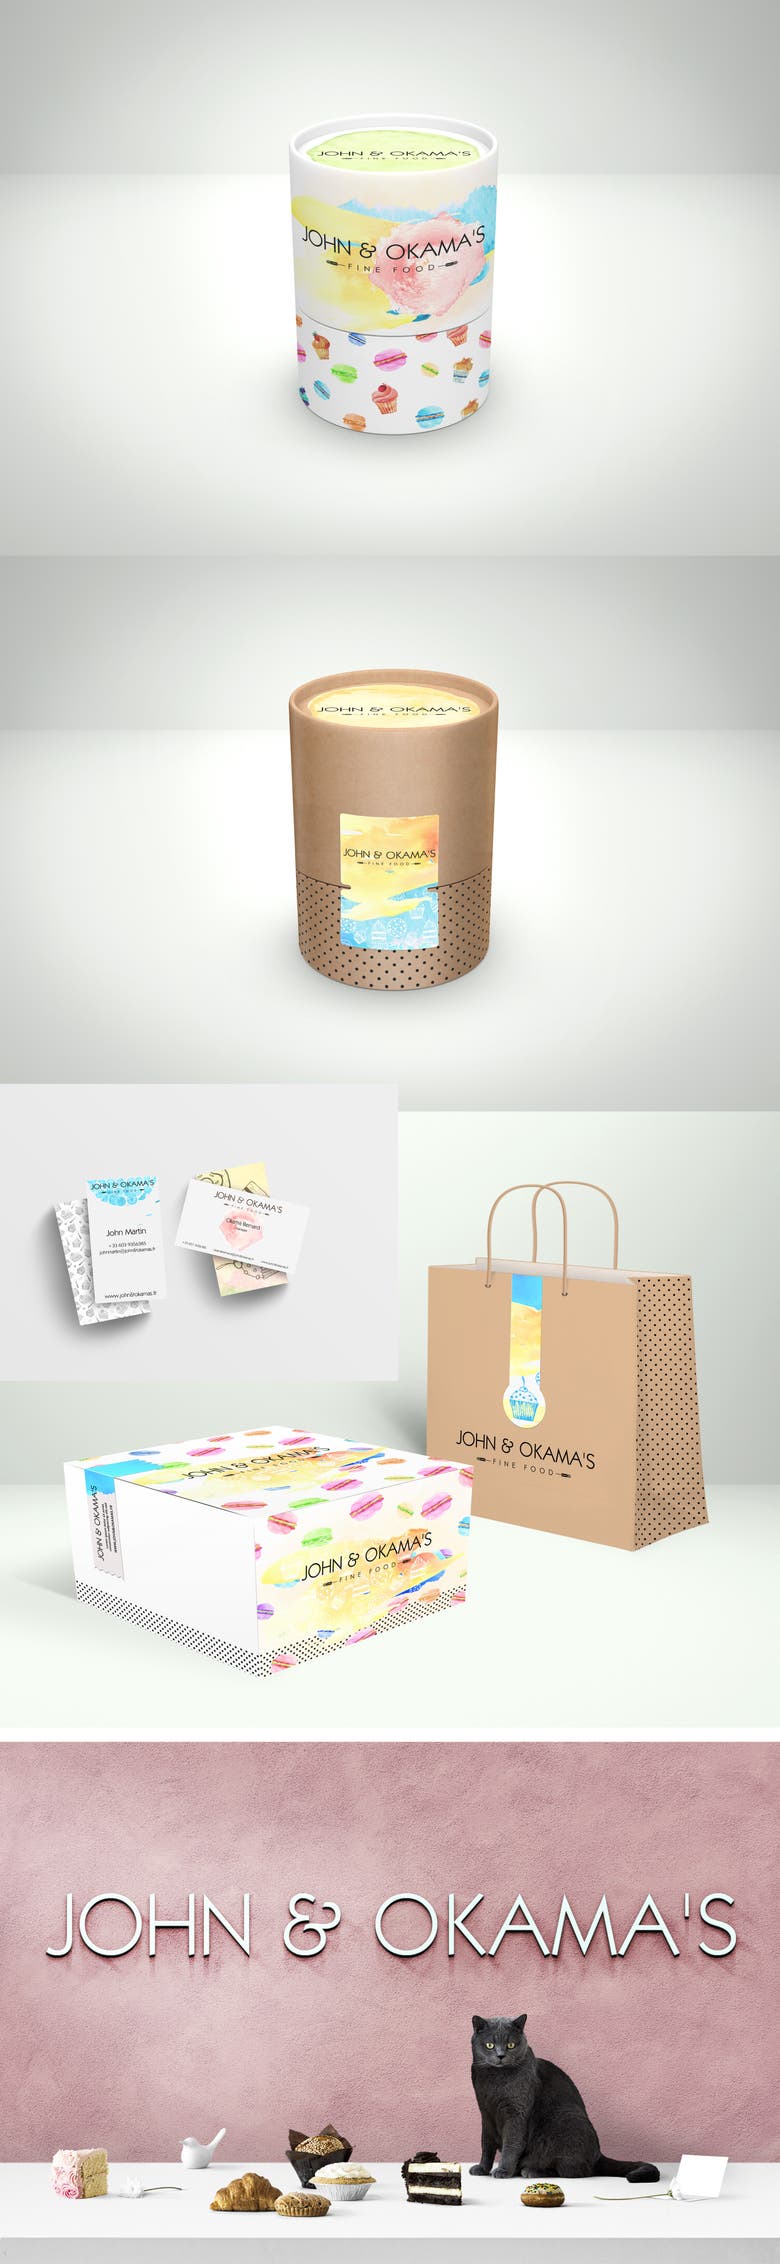 branding & packaging